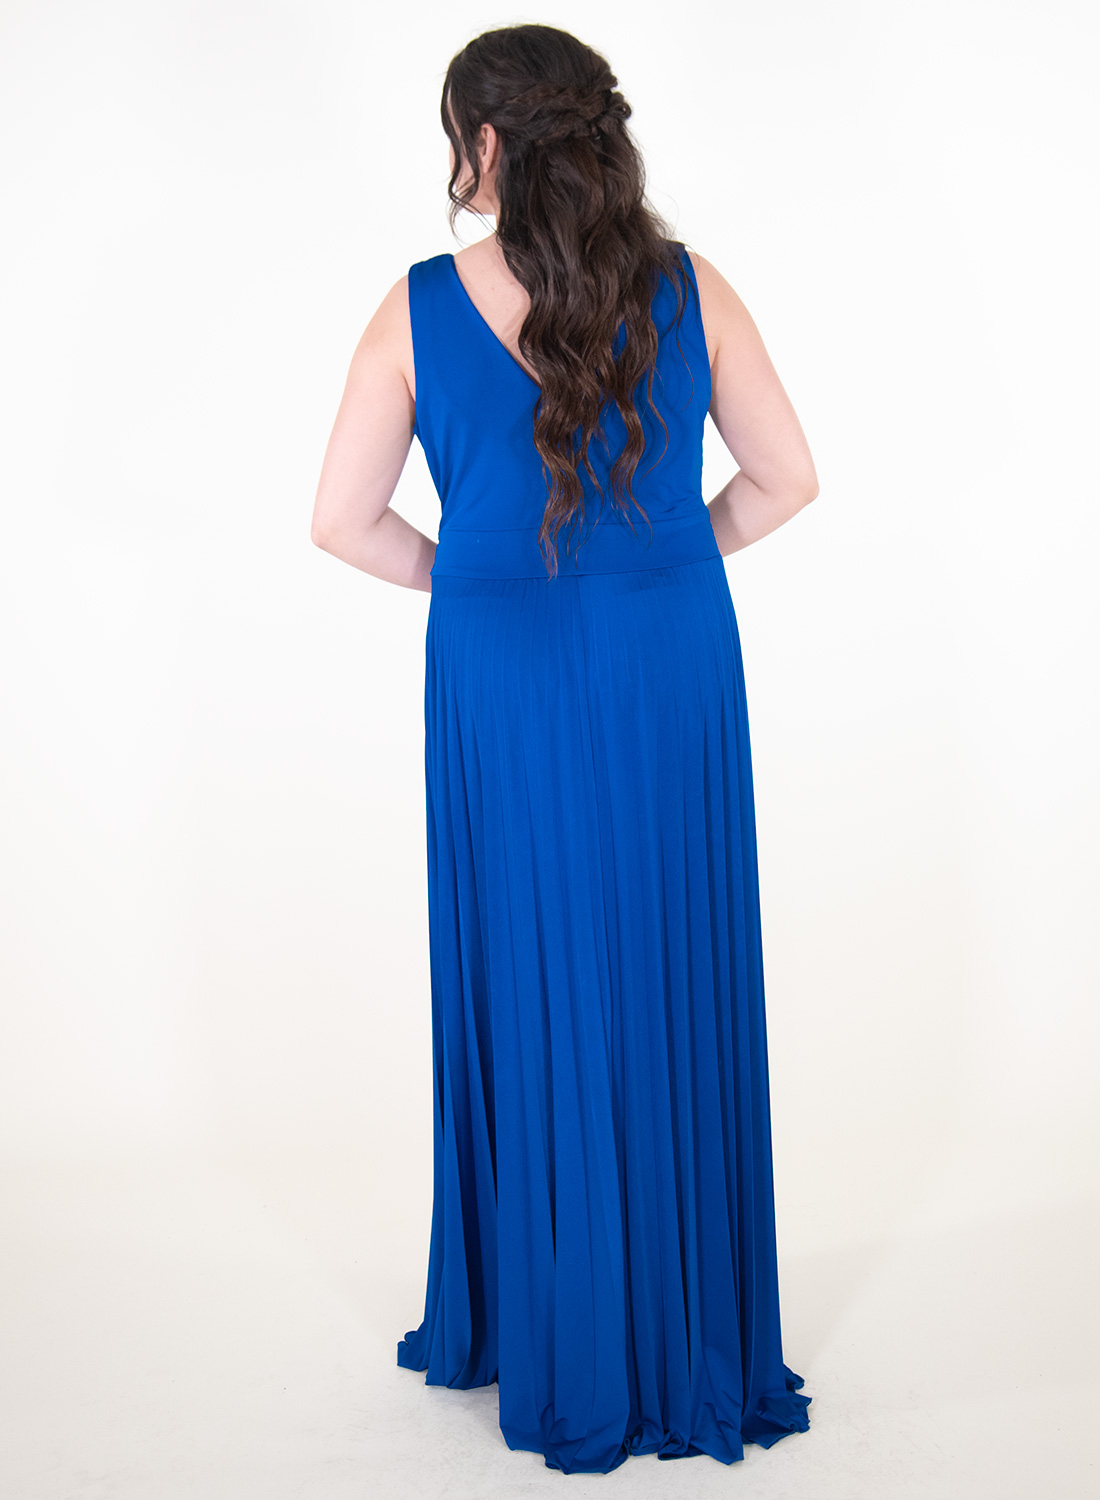 Αιθέριο μπλε ρουά φόρεμα